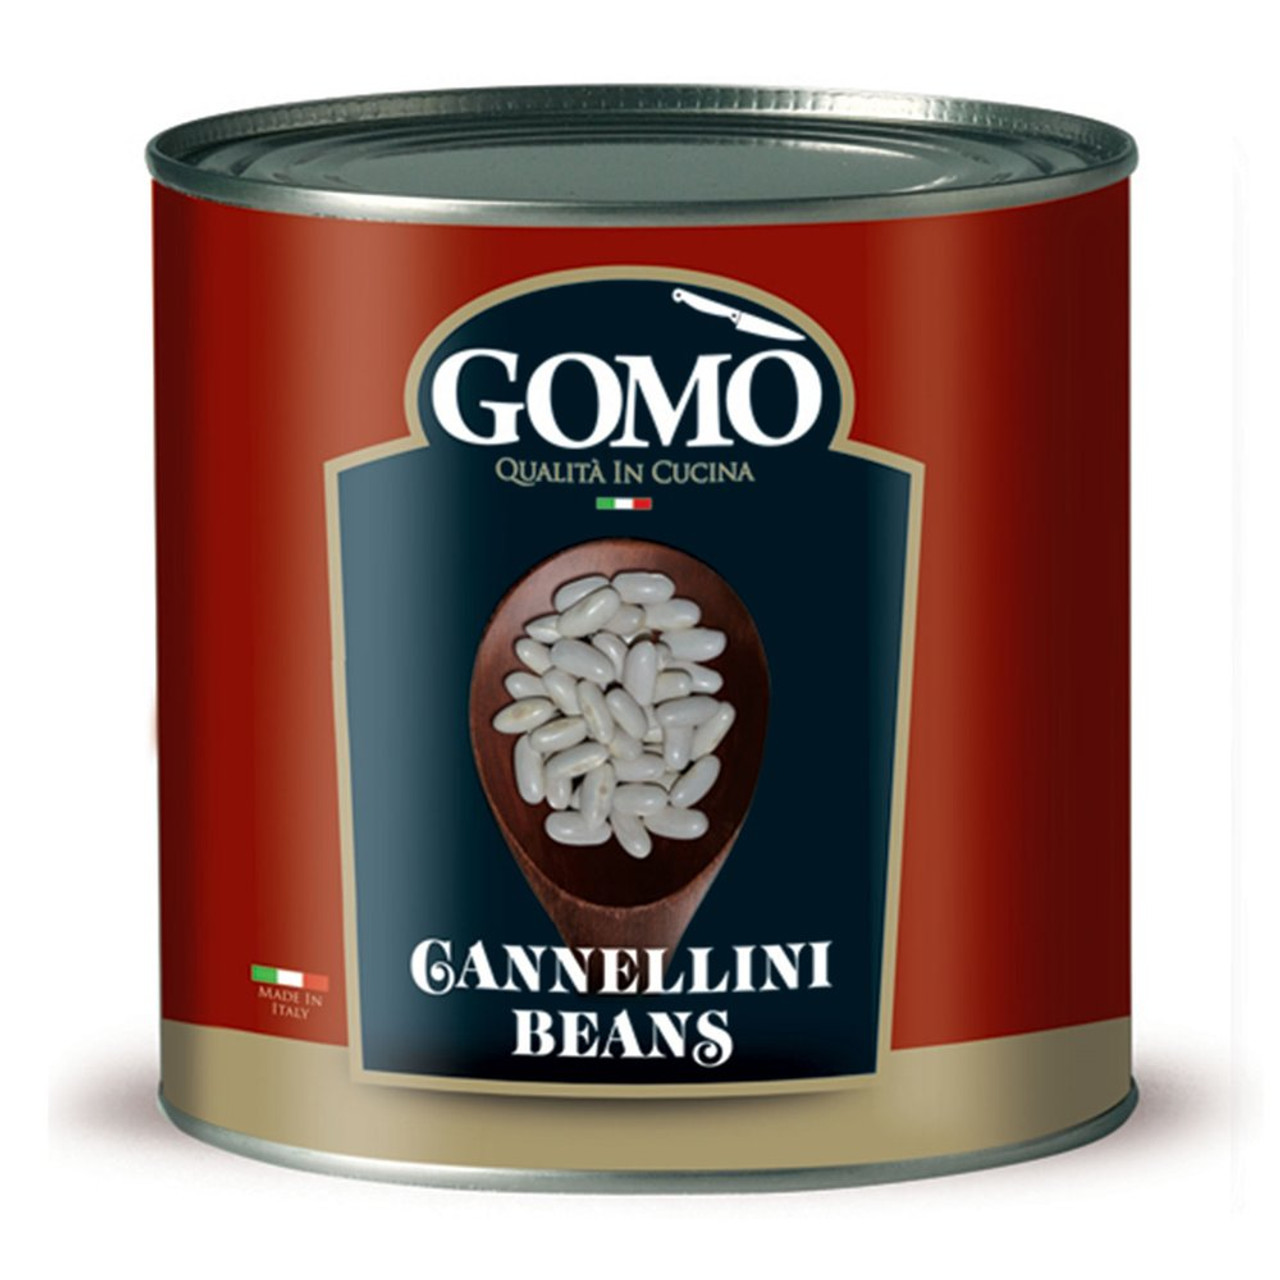 GOMO - CANNELLINI BEANS - 2.5KG